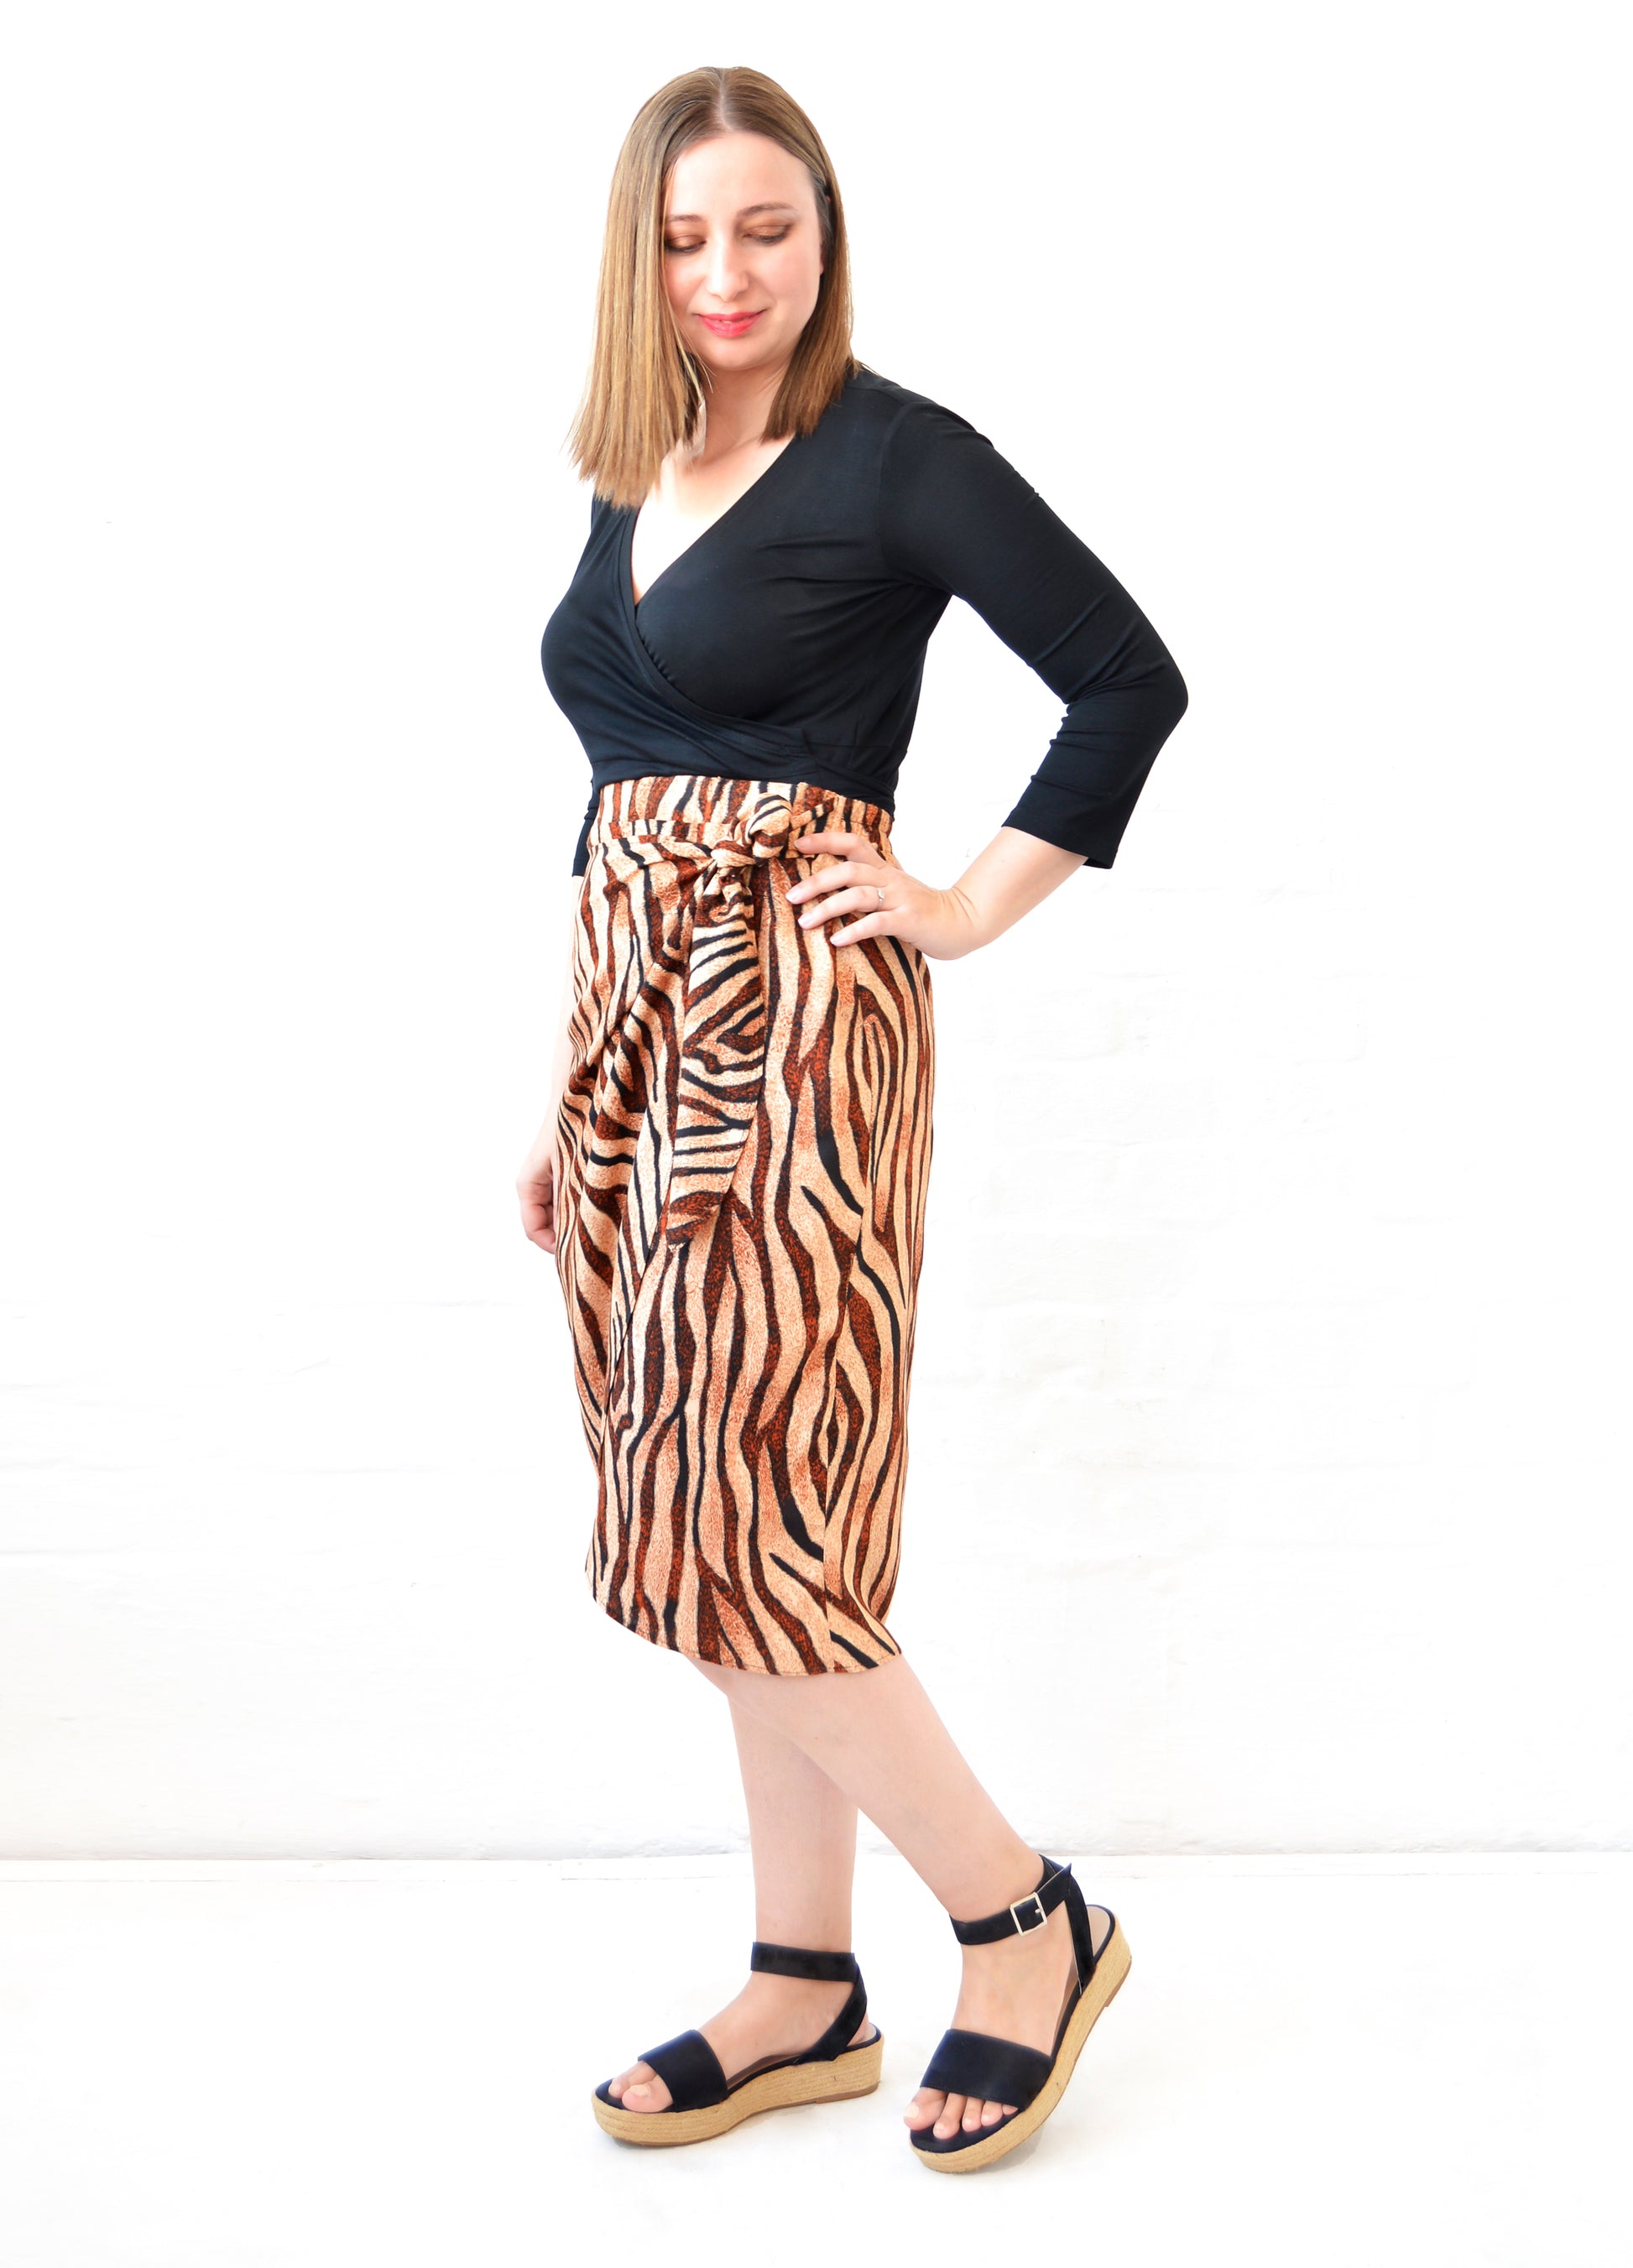 Willow wrap skirt in caramel Tiger Wave print – Maya Prass Clothing